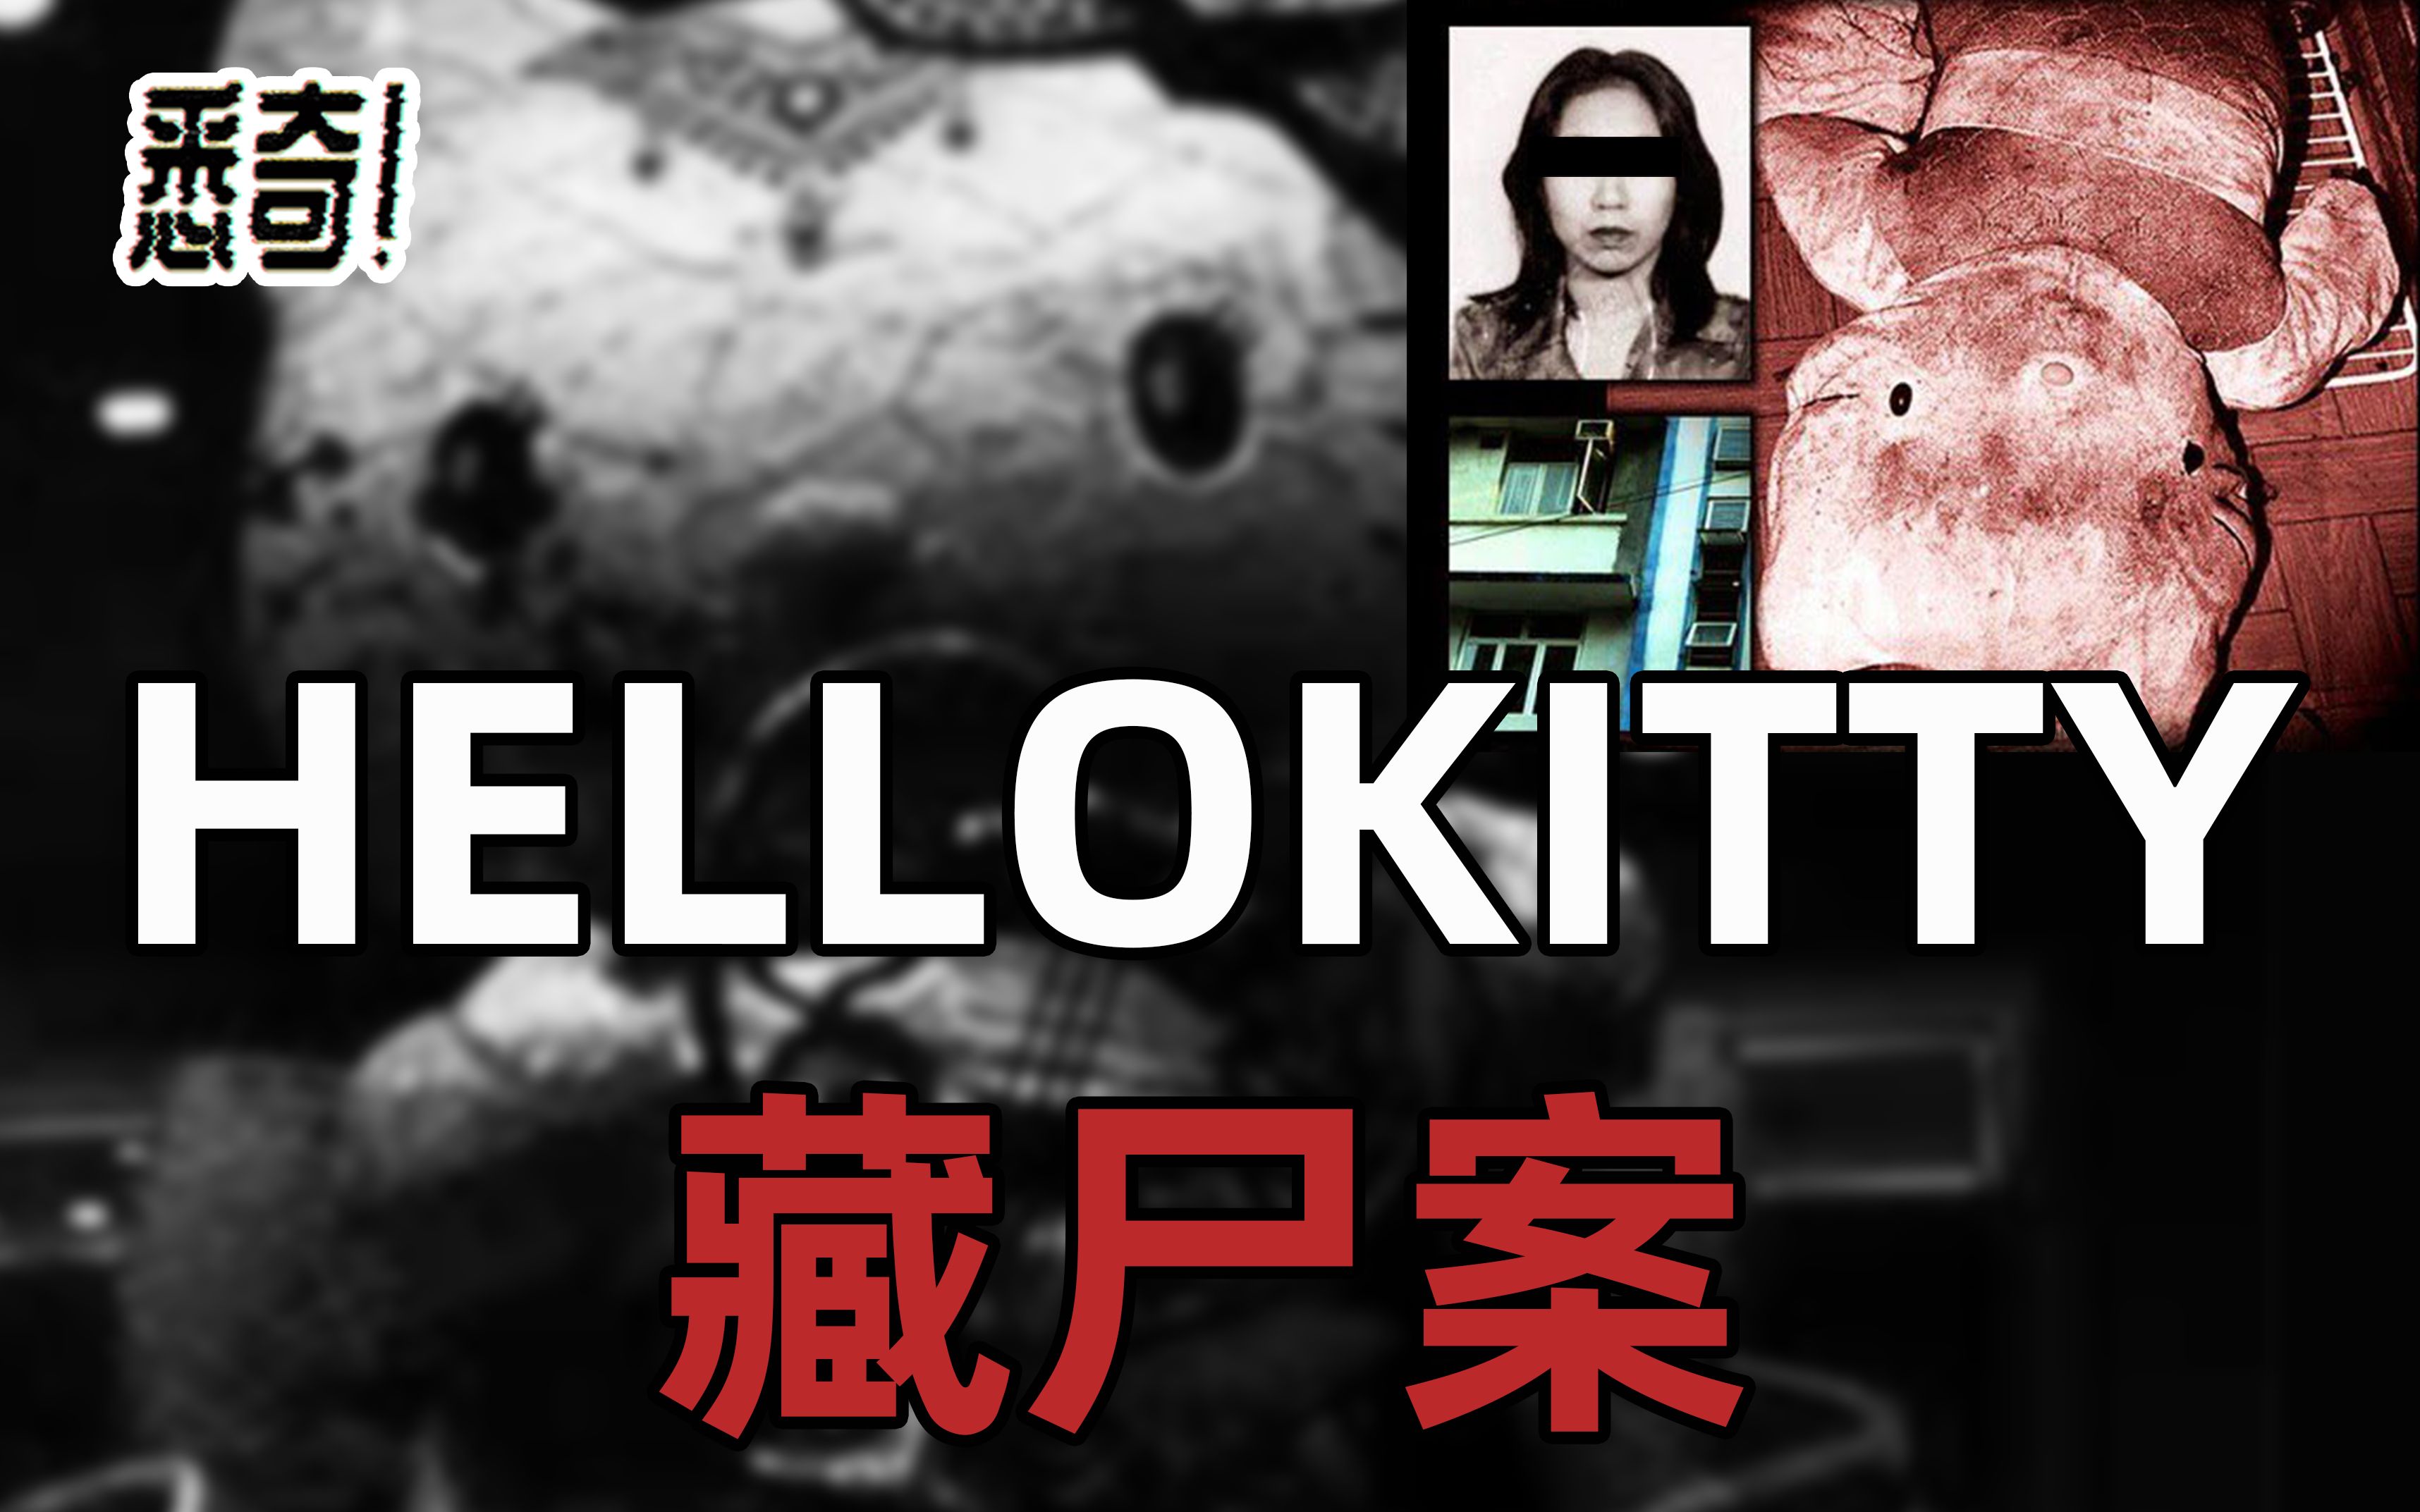 香港凯蒂猫藏尸案图片